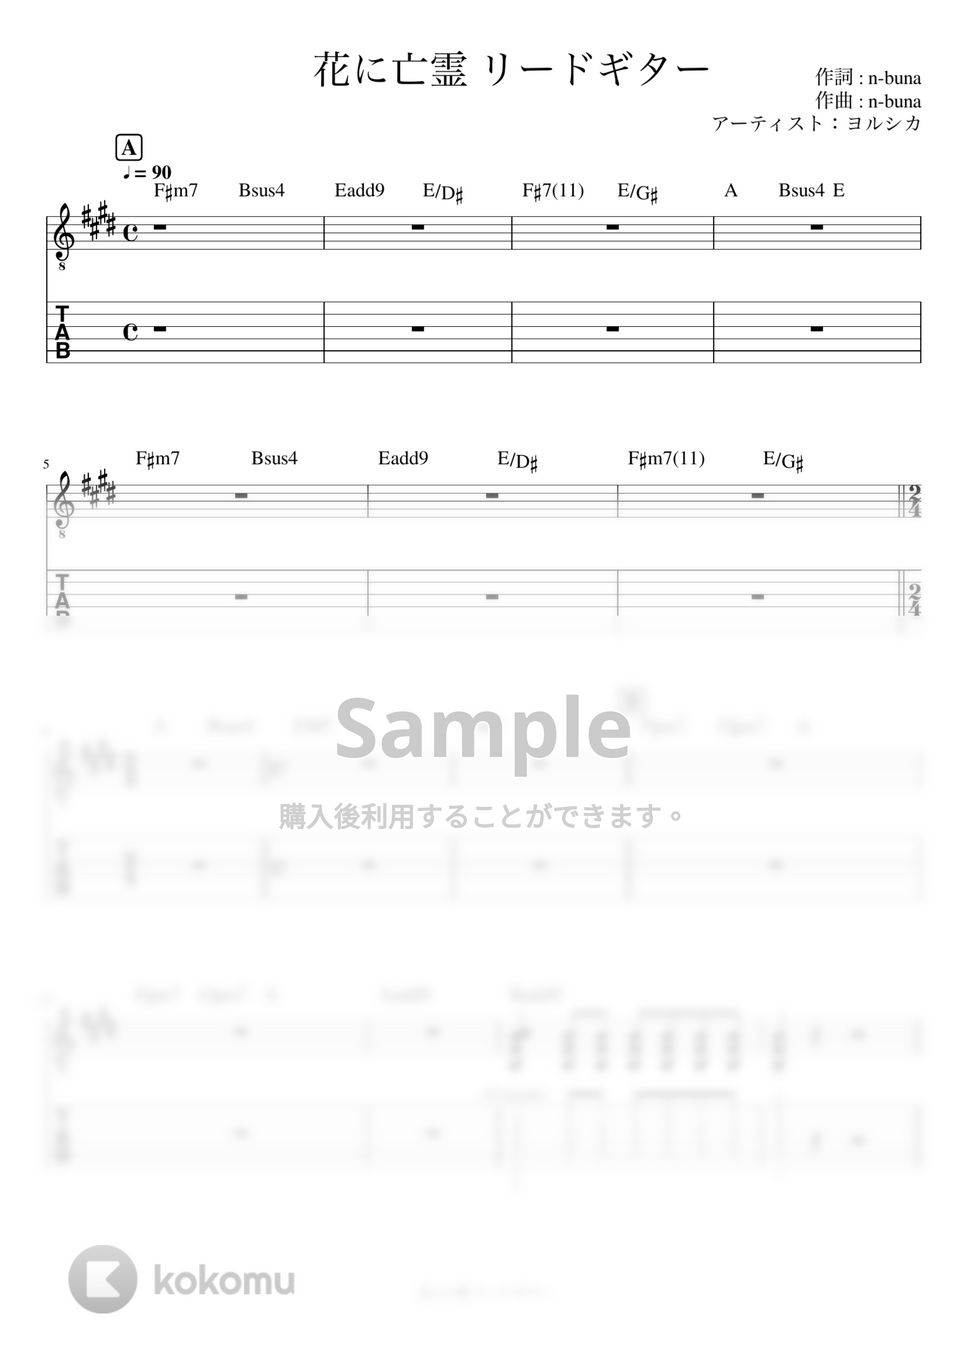 ヨルシカ - 花に亡霊 (リードギター) by J-ROCKチャンネル